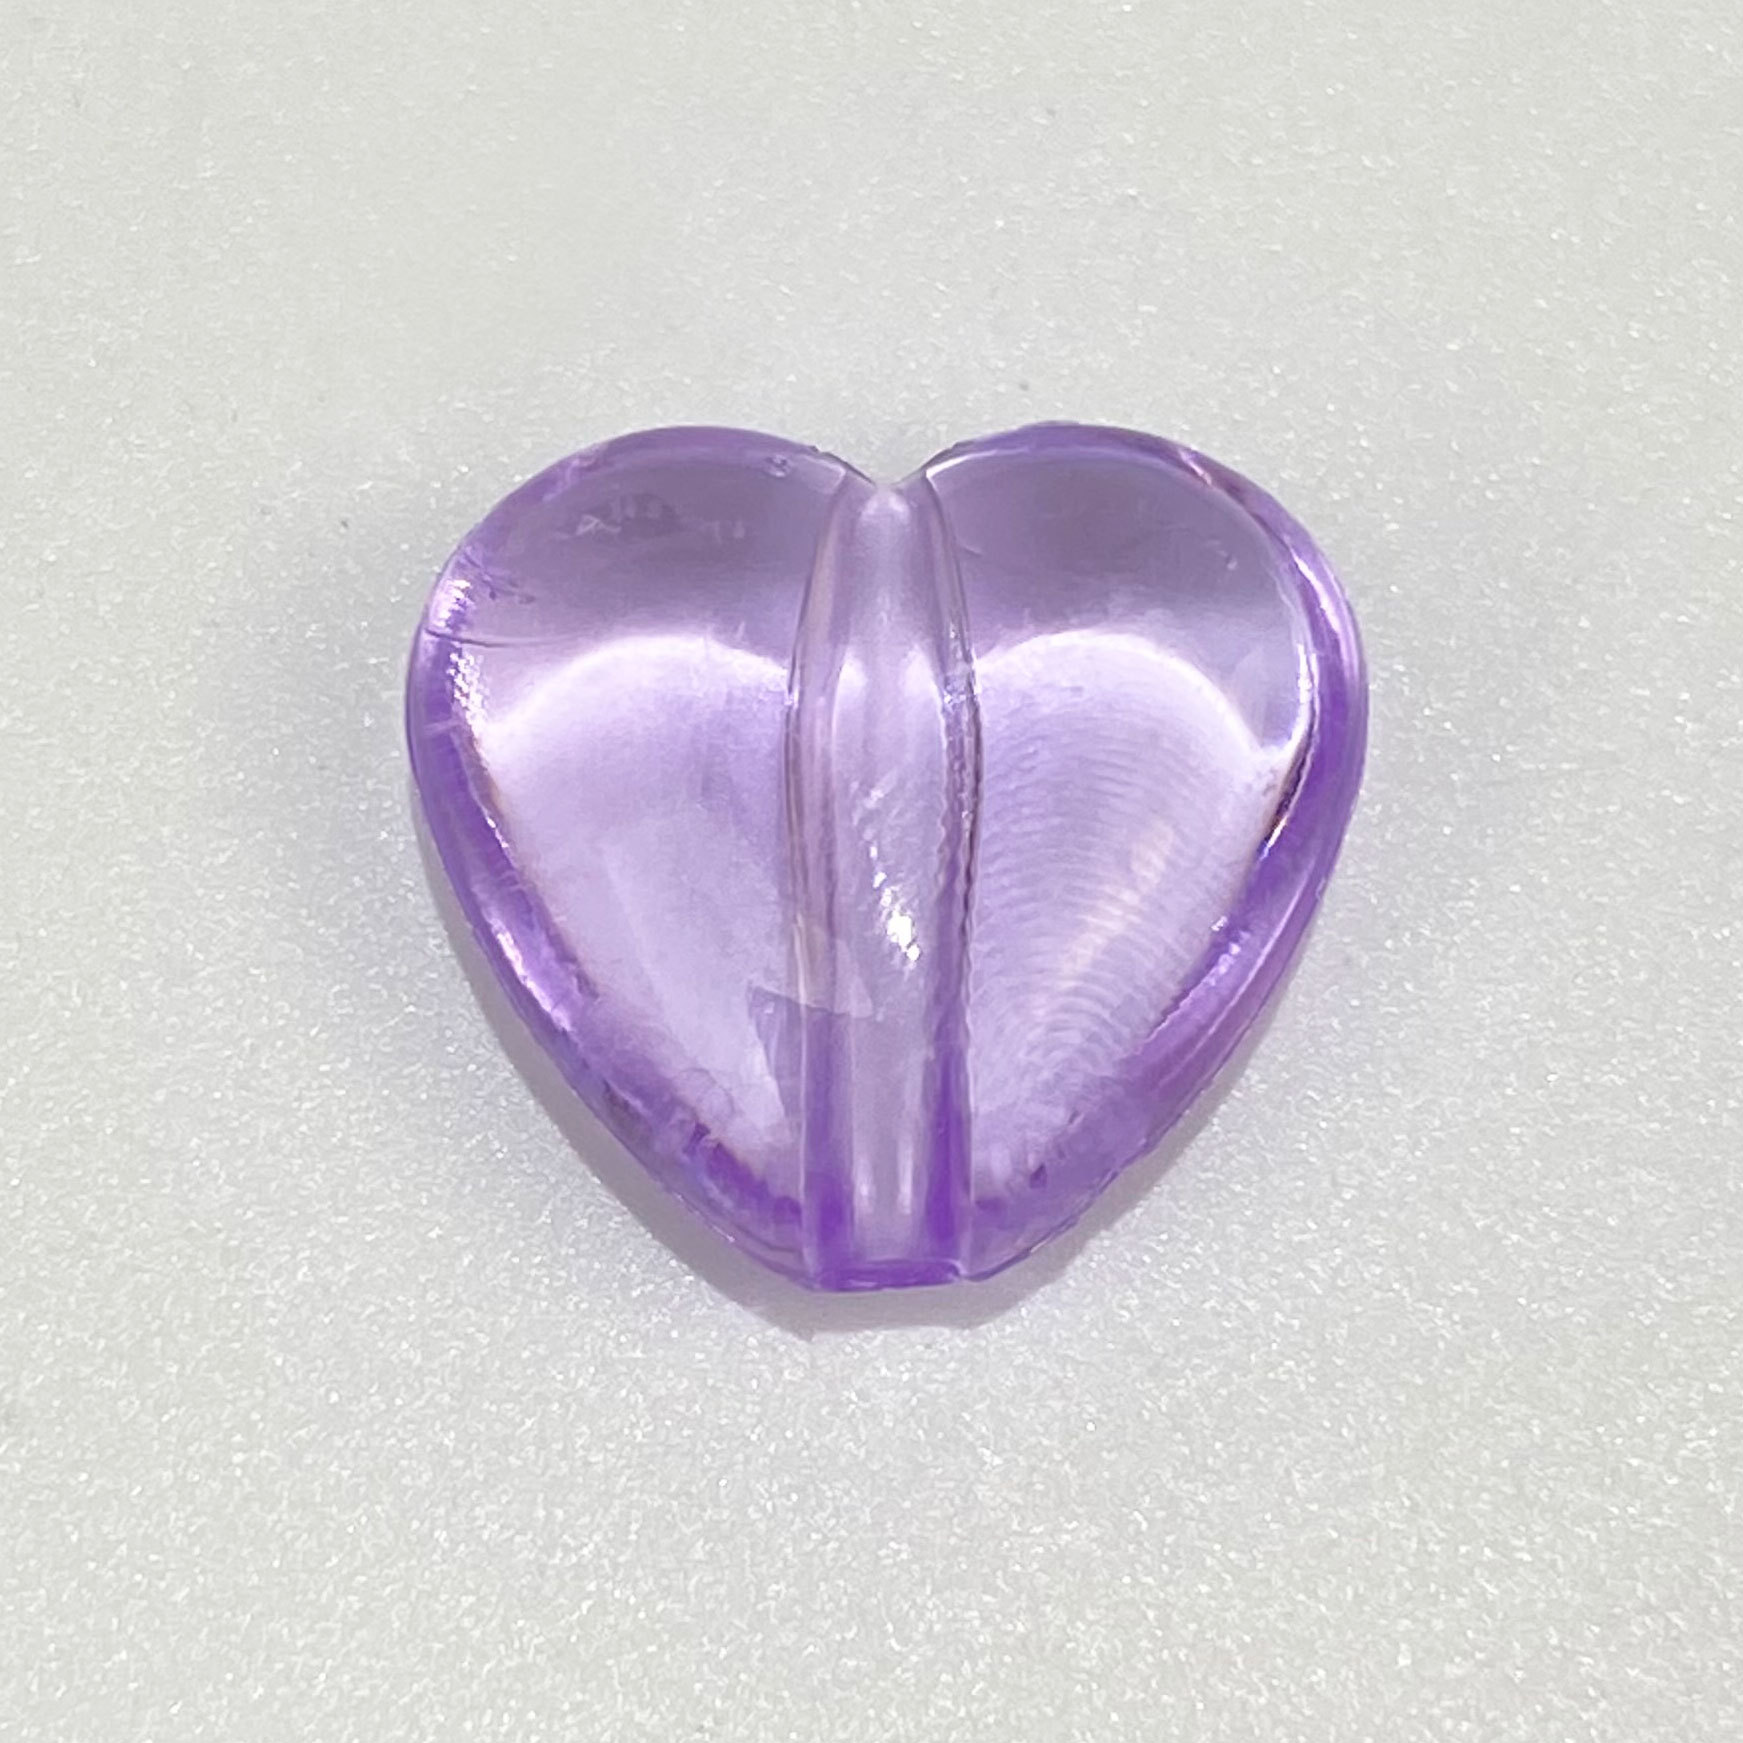 10:purpurinis